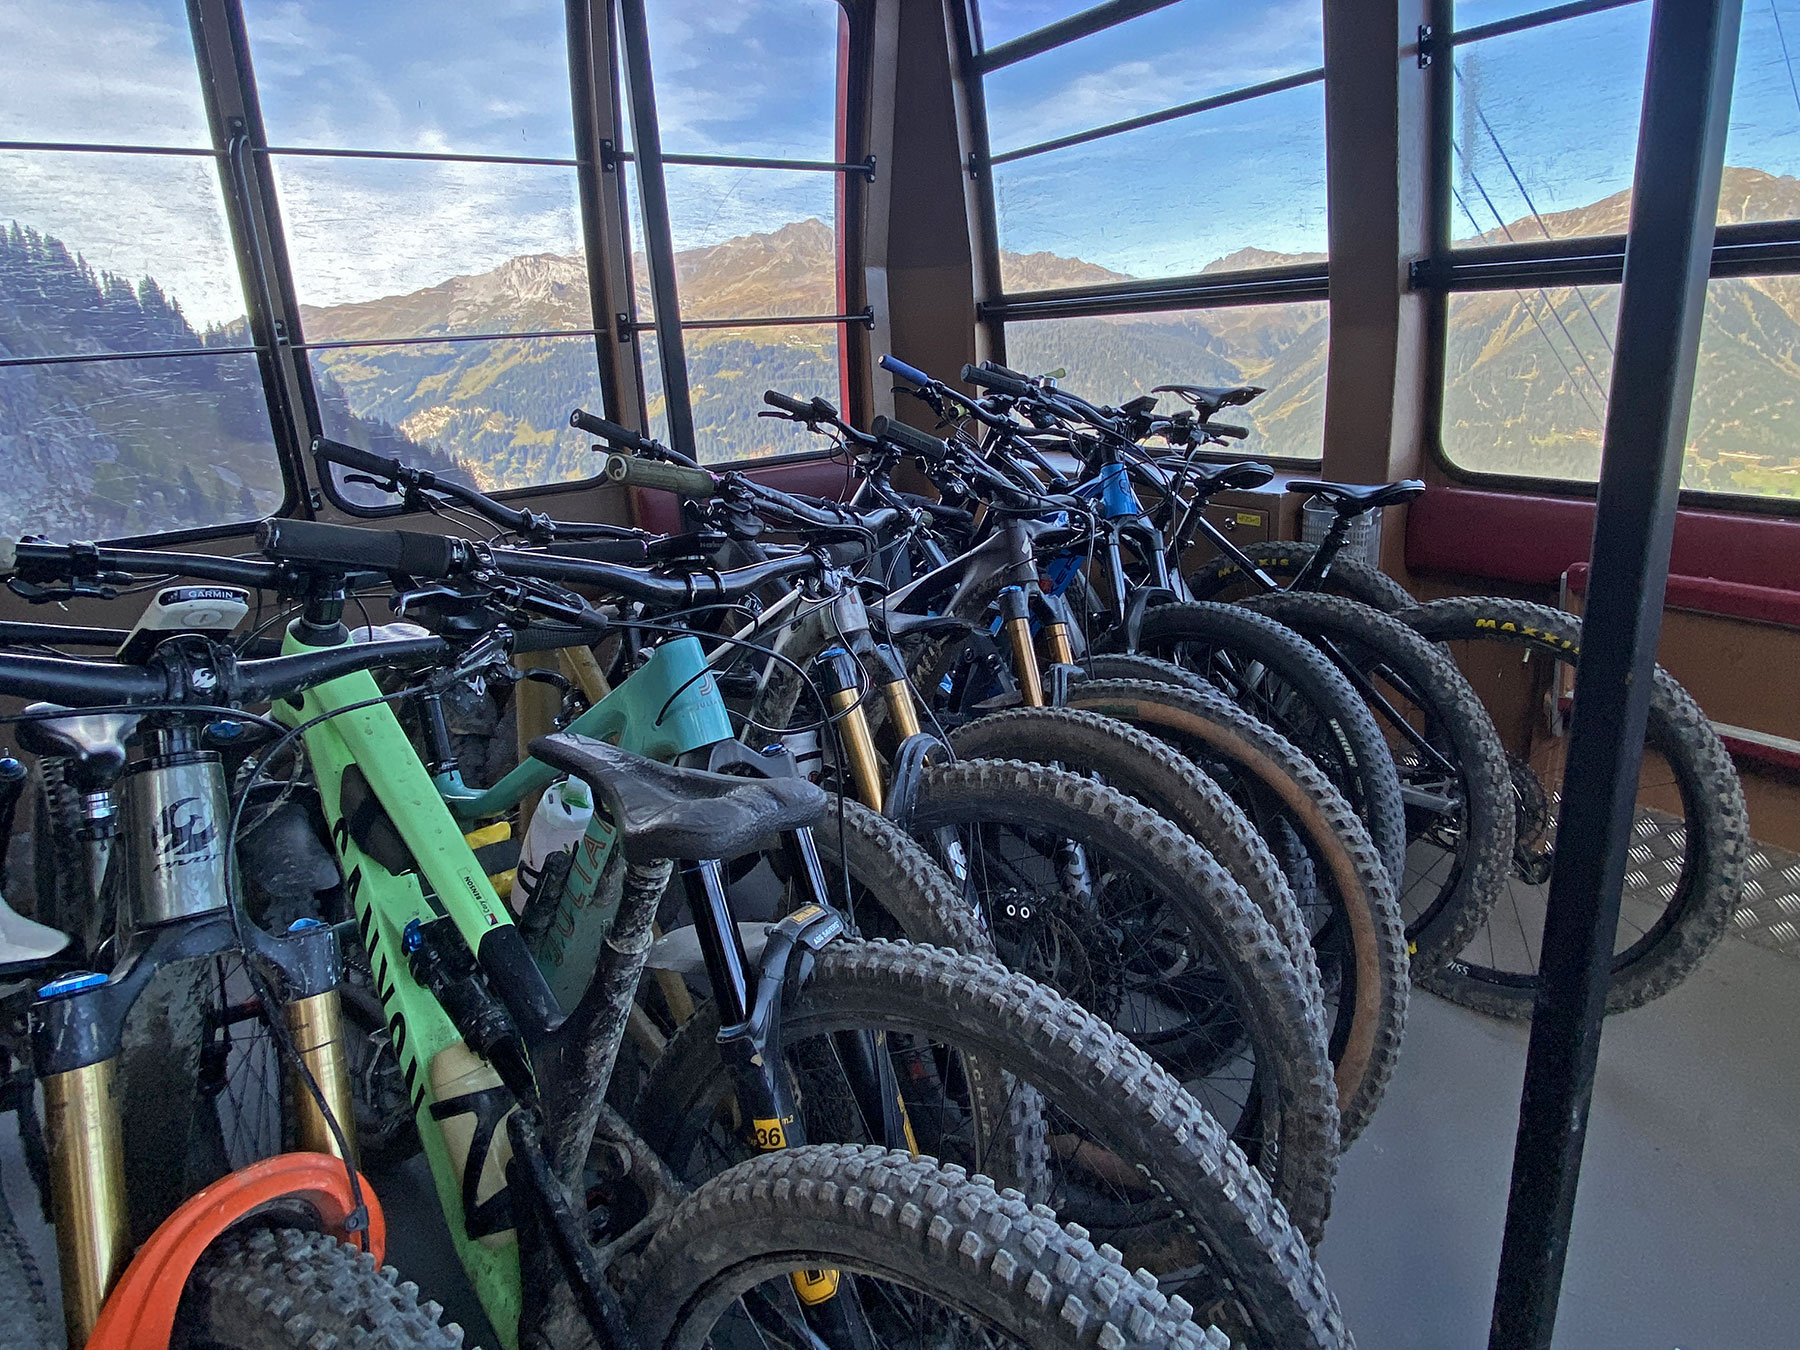 Davos-Klosters, CH Swiss bikeparking